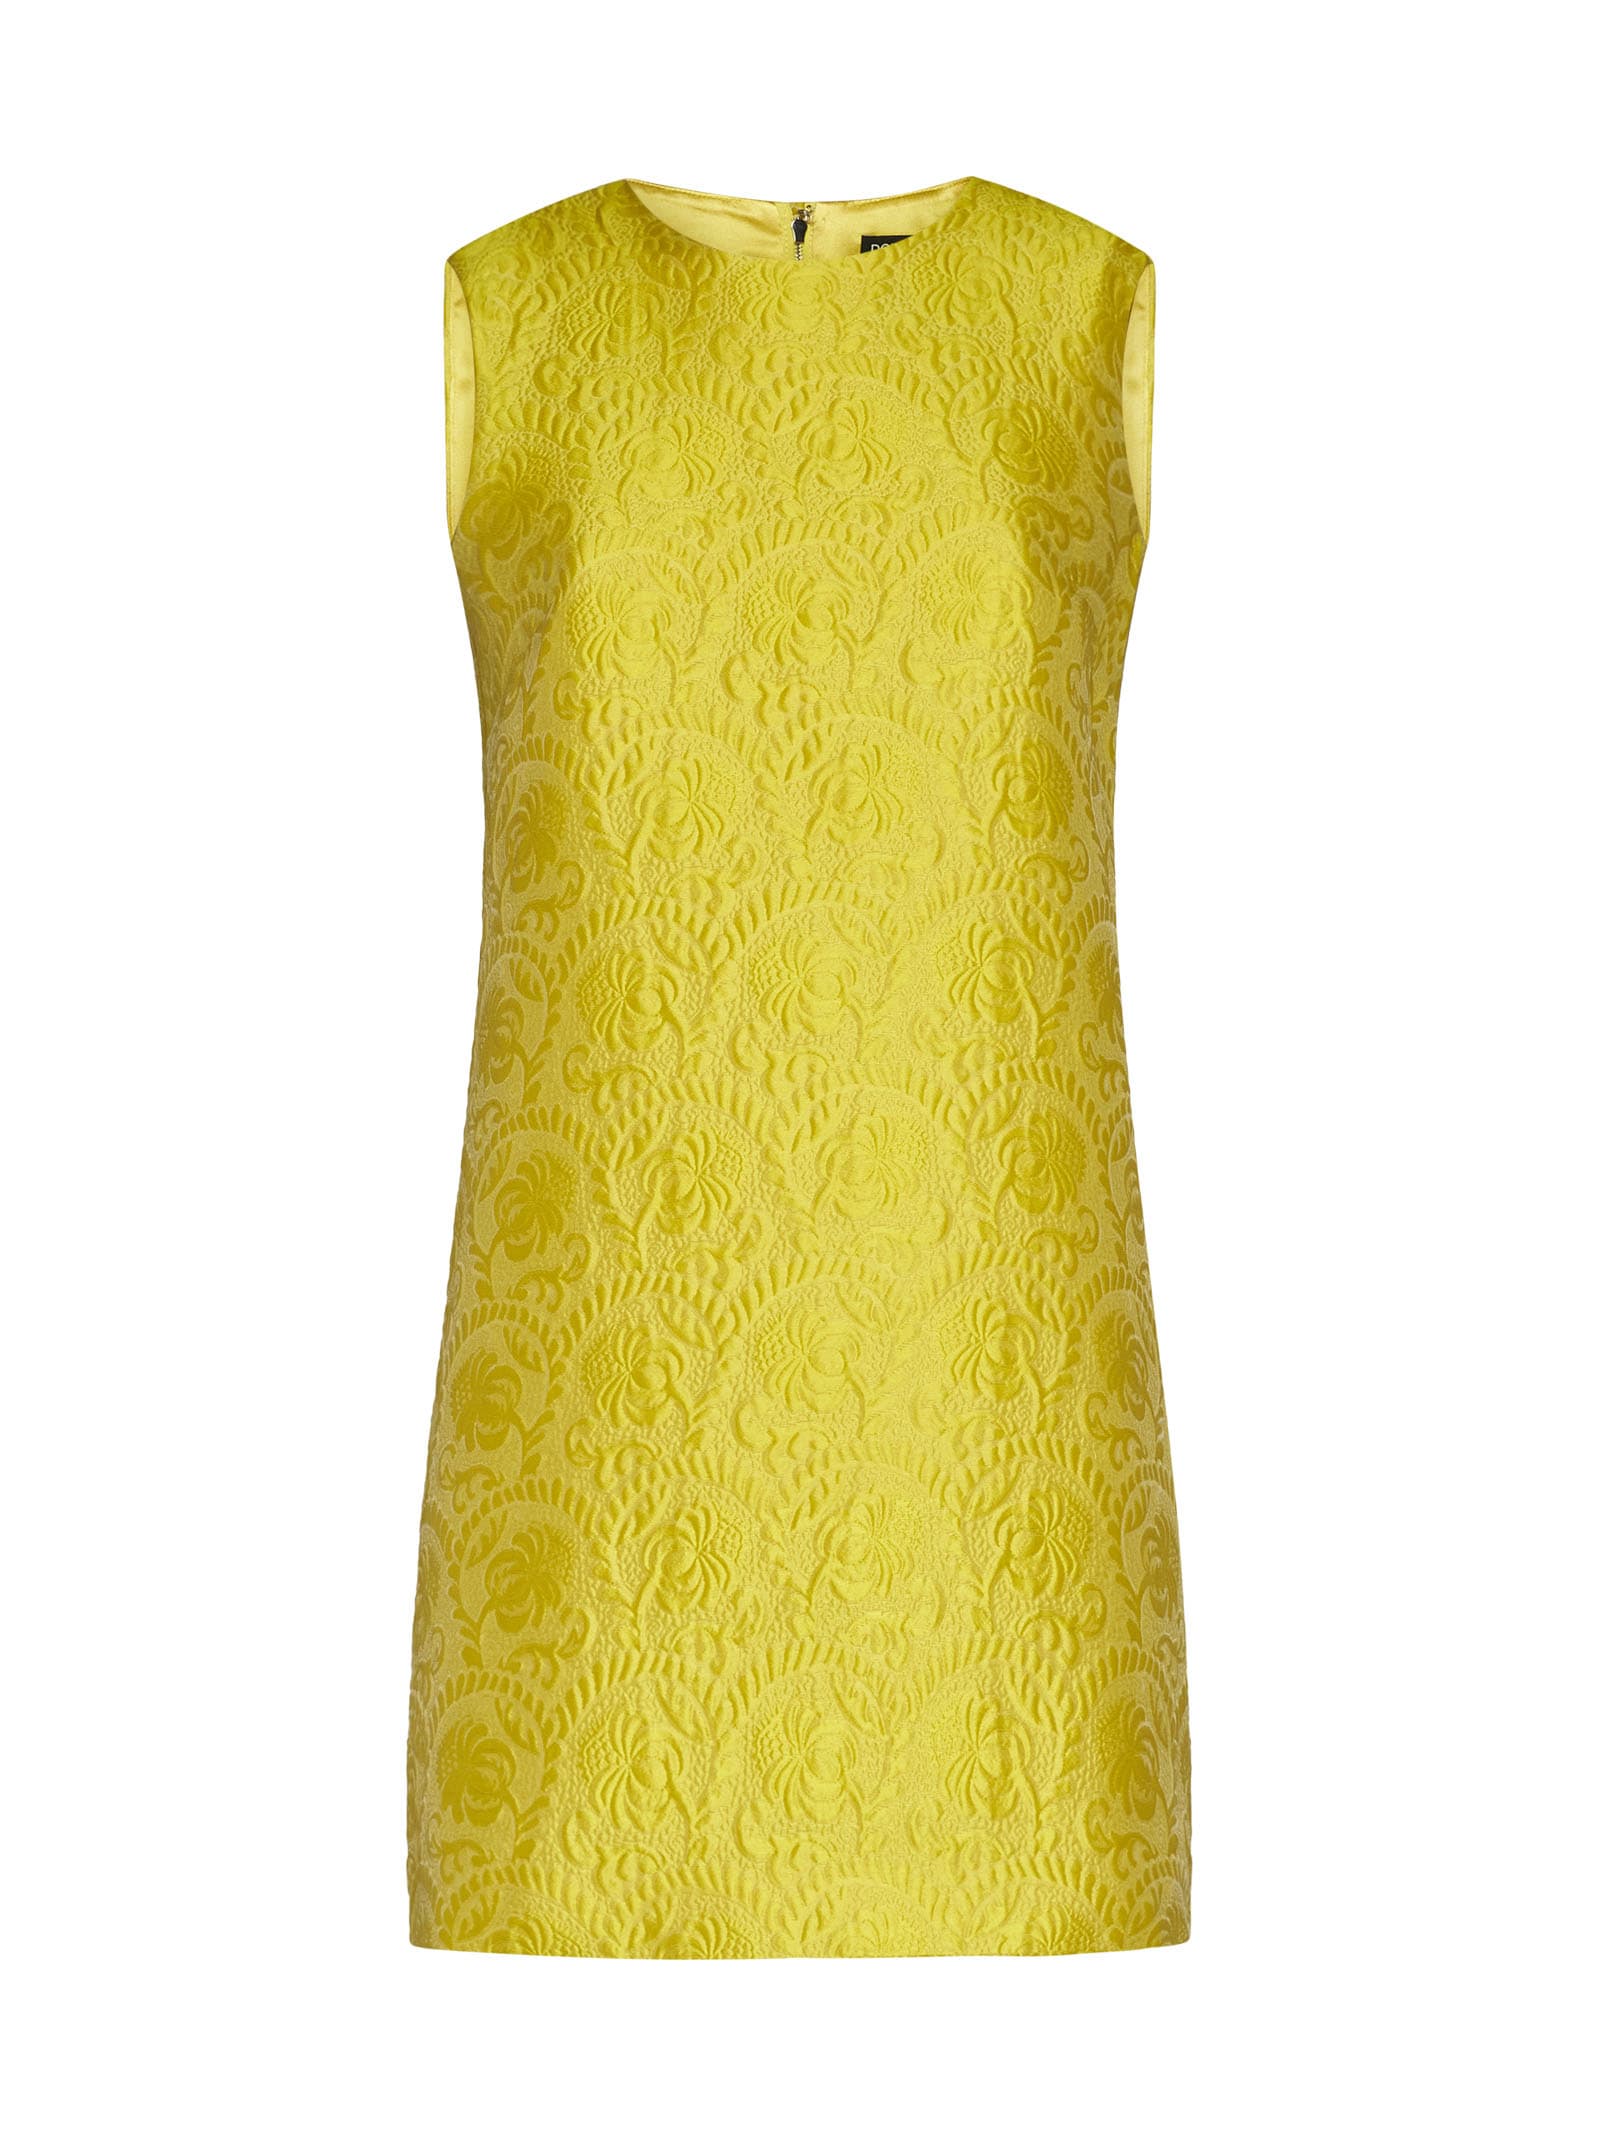 Dolce & Gabbana Dress In Yellow